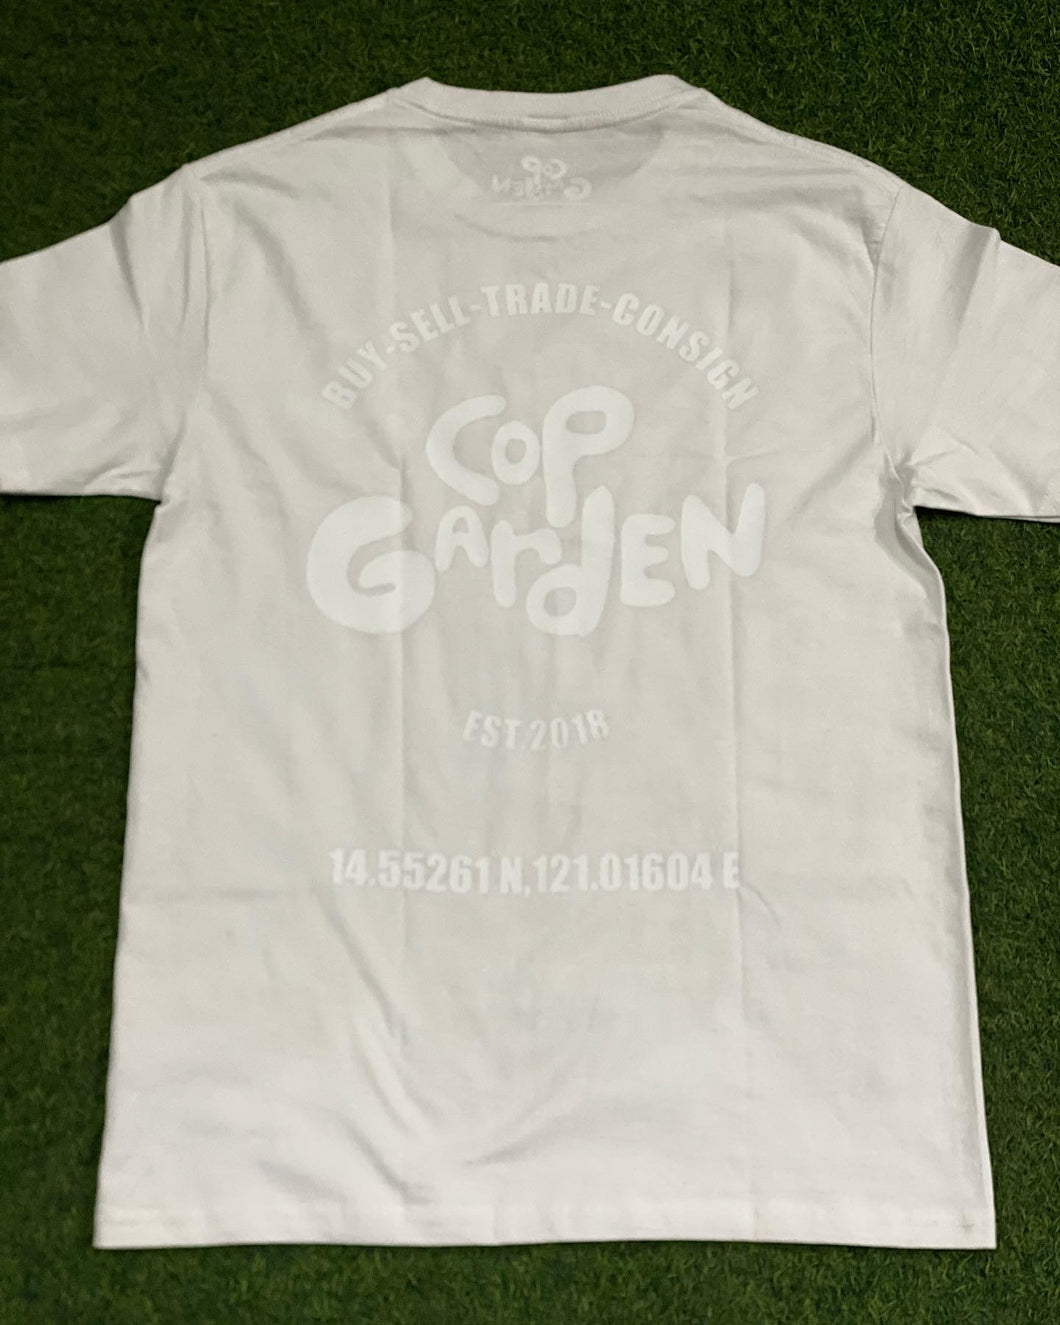 Cop Garden T-Shirt 